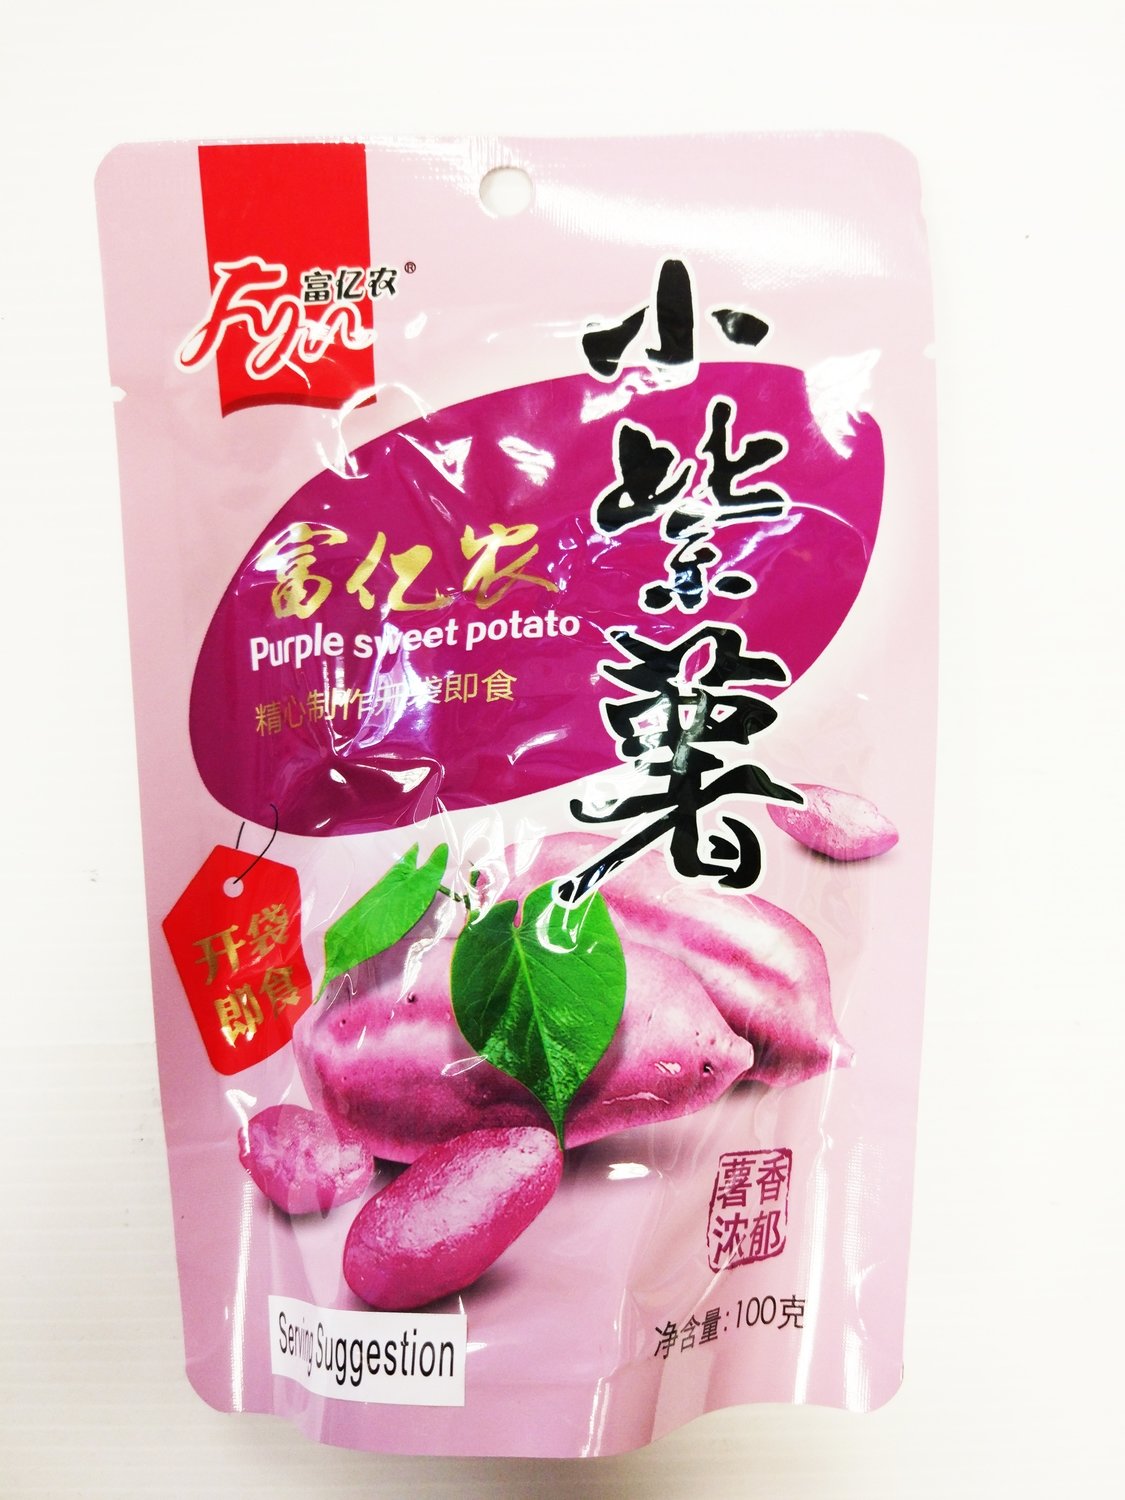 FYN Purple Sweet Potato 100g